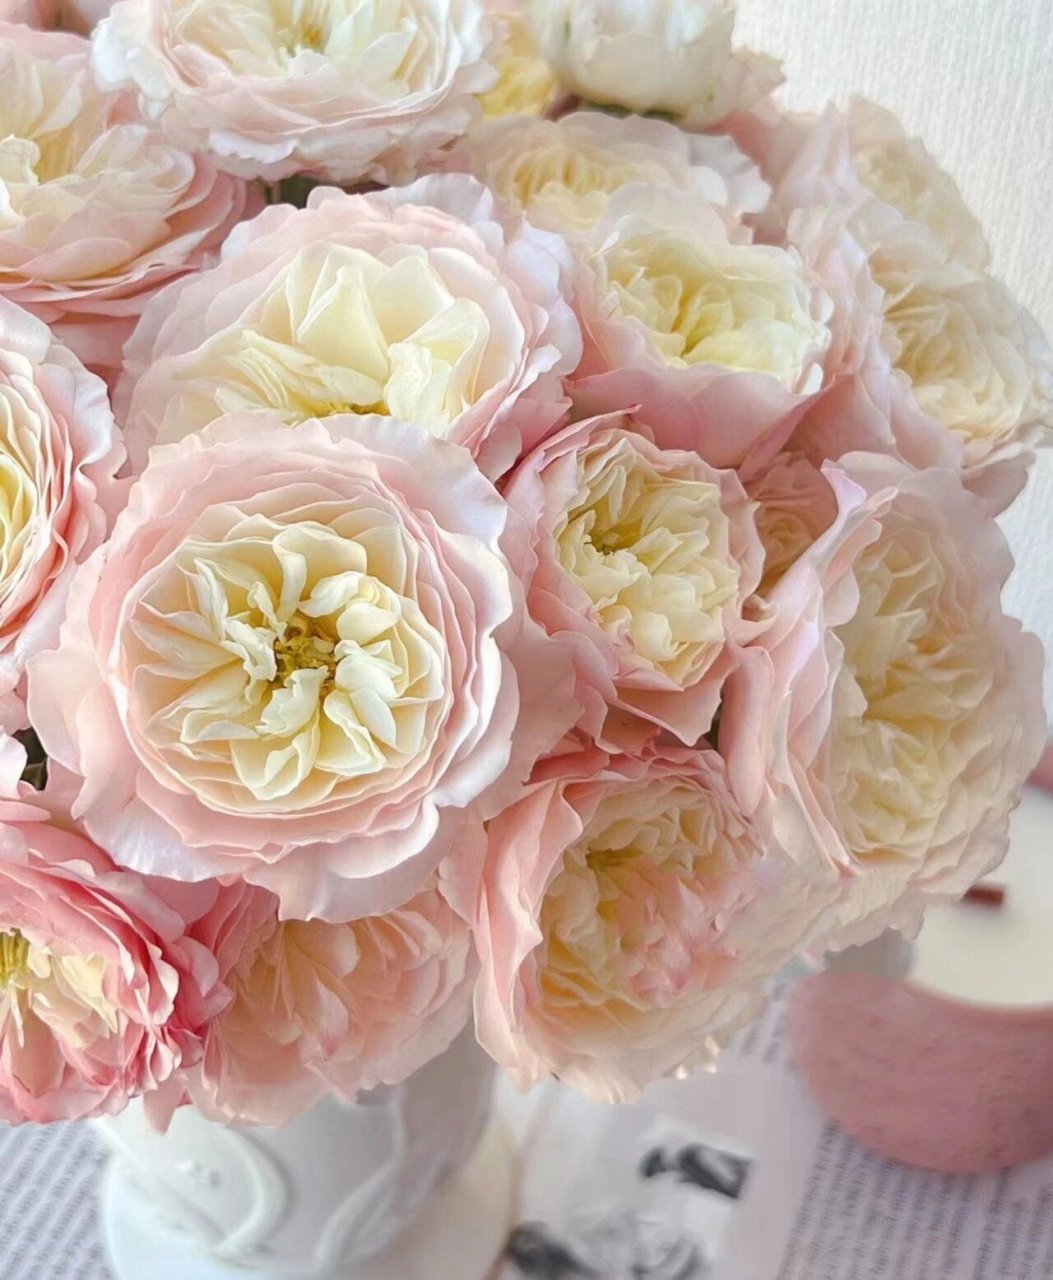 凯拉玫瑰,逆天的美呀……  凯拉花色是腮红,粉红和奶油色混合,带有一